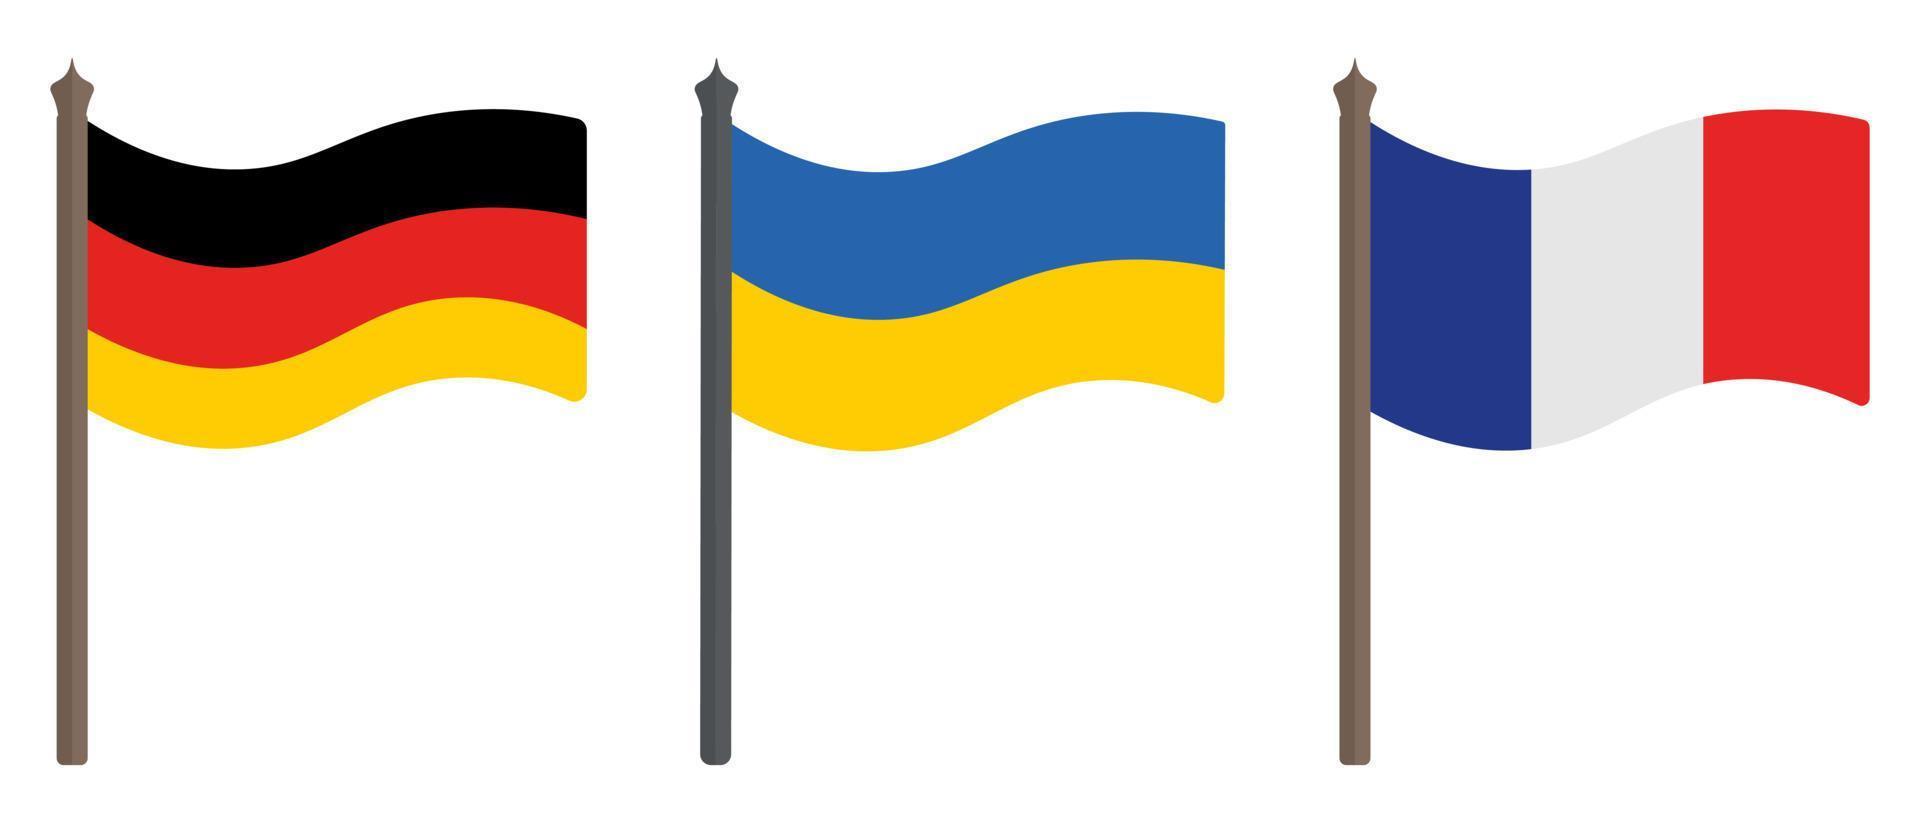 bandiera di germania, ucraina e francia. set di illustrazioni vettoriali a colori. simboli degli stati. temi politici. stile piatto. segno nazionale. sfondo isolato.